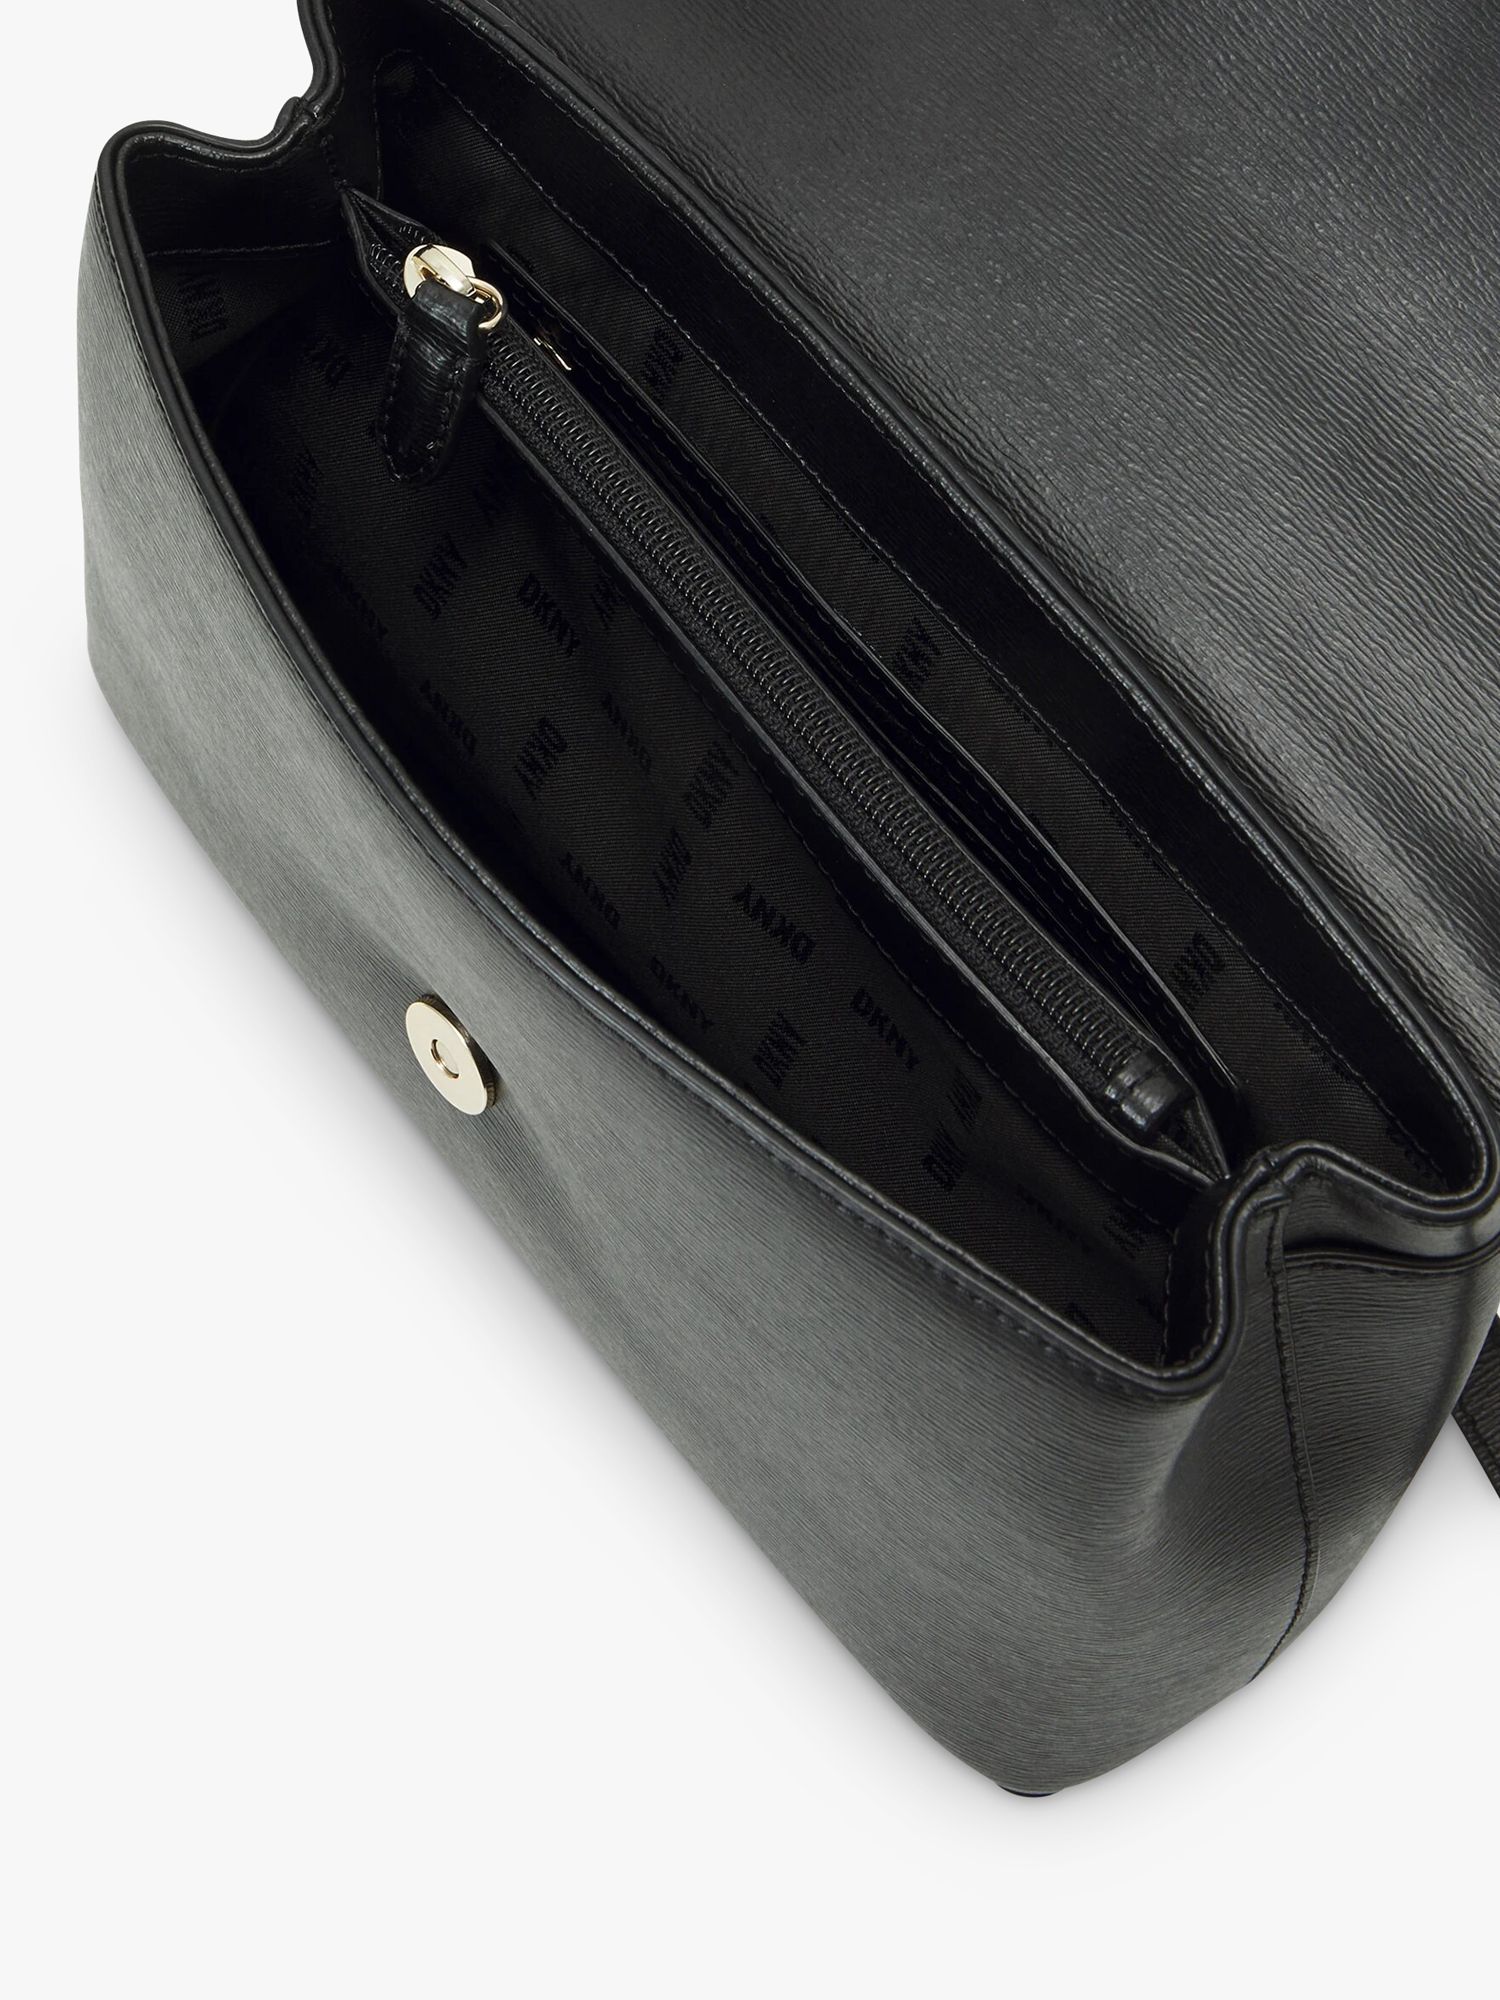 DKNY Bryant Shoulder Bag, Black